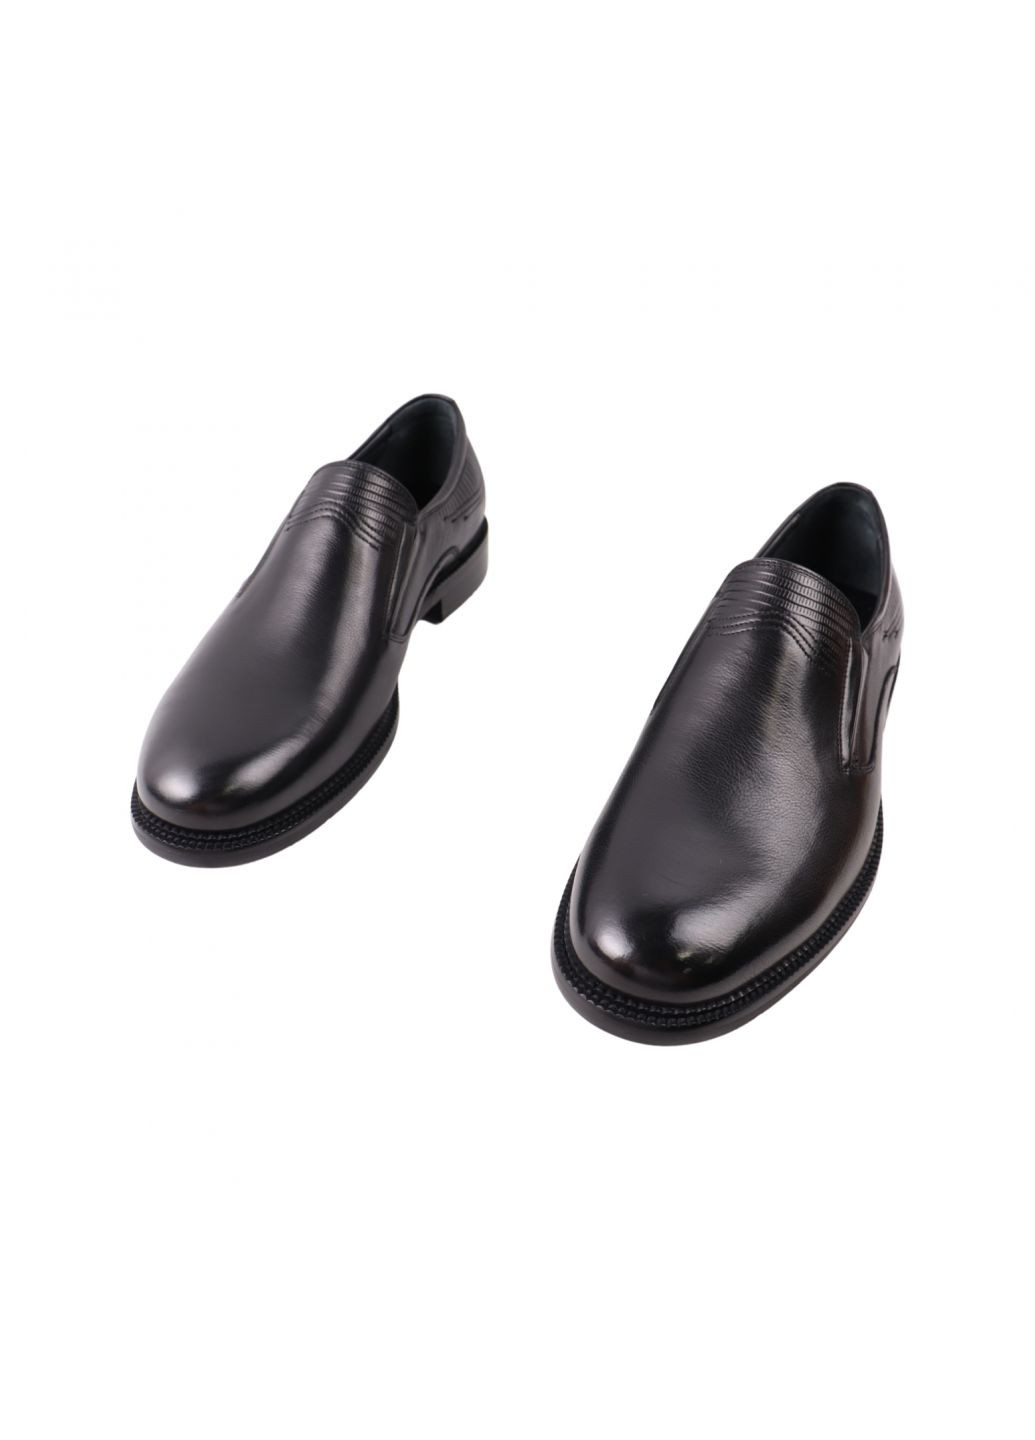 Туфлі чоловічі чорні натуральна шкіра Clemento 48-23dt (261856724)